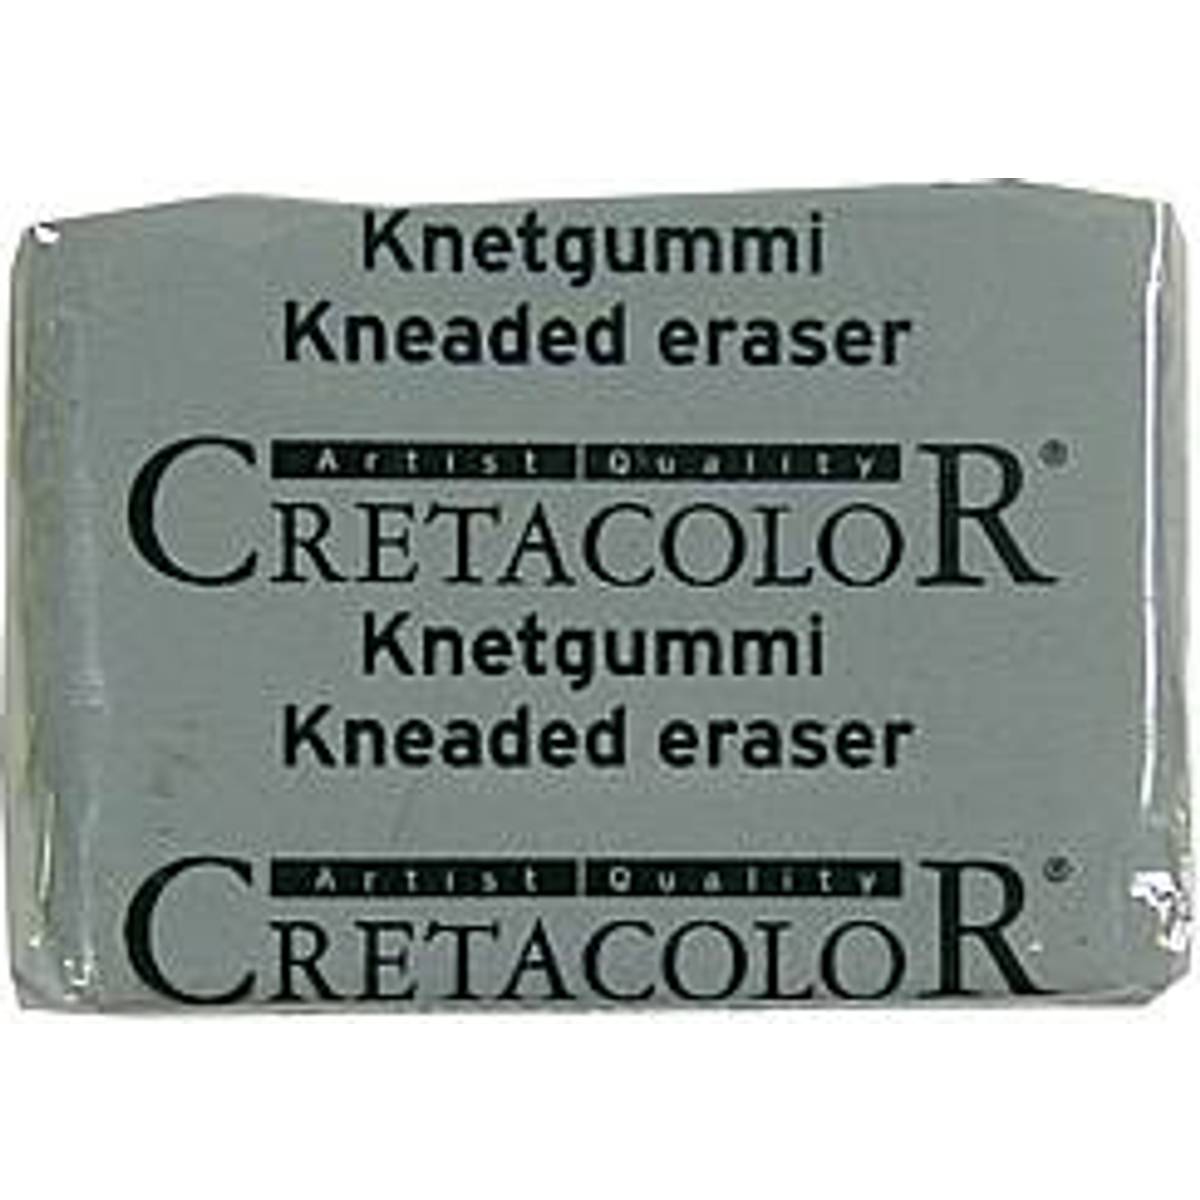 Cretacolor Pennor (100+ produkter) hos PriceRunner • Se priser nu »